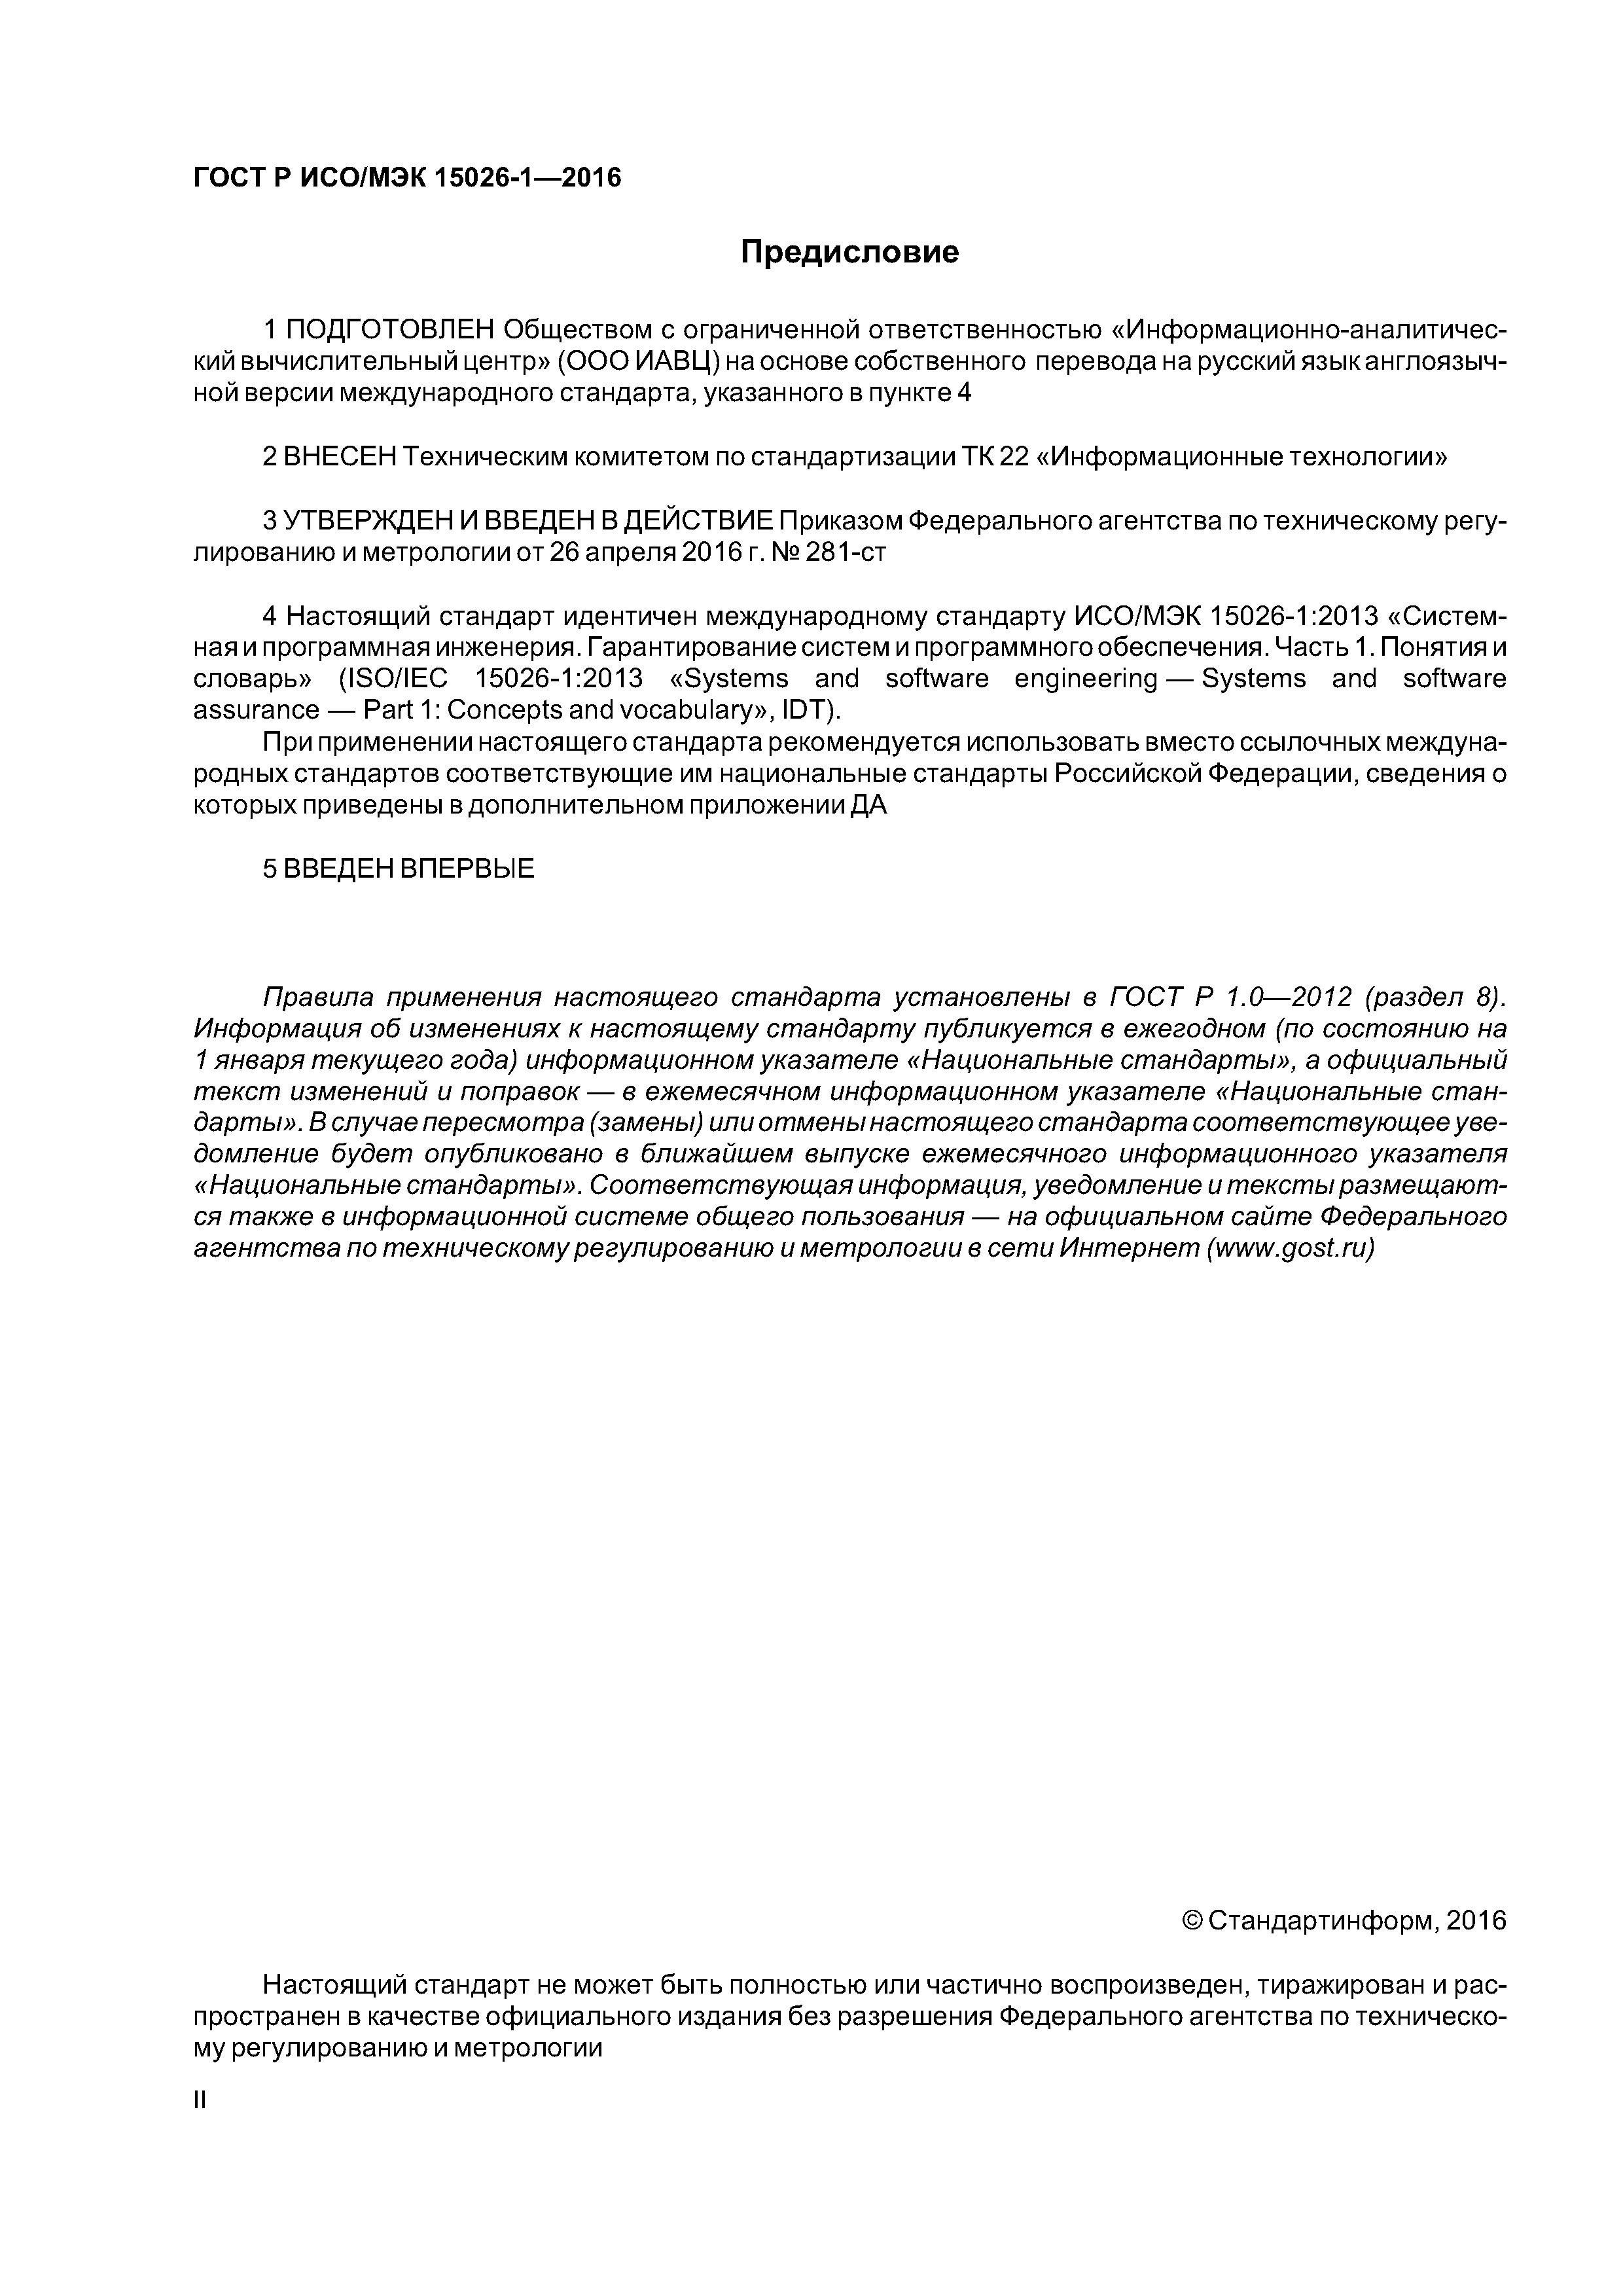 ГОСТ Р ИСО/МЭК 15026-1-2016